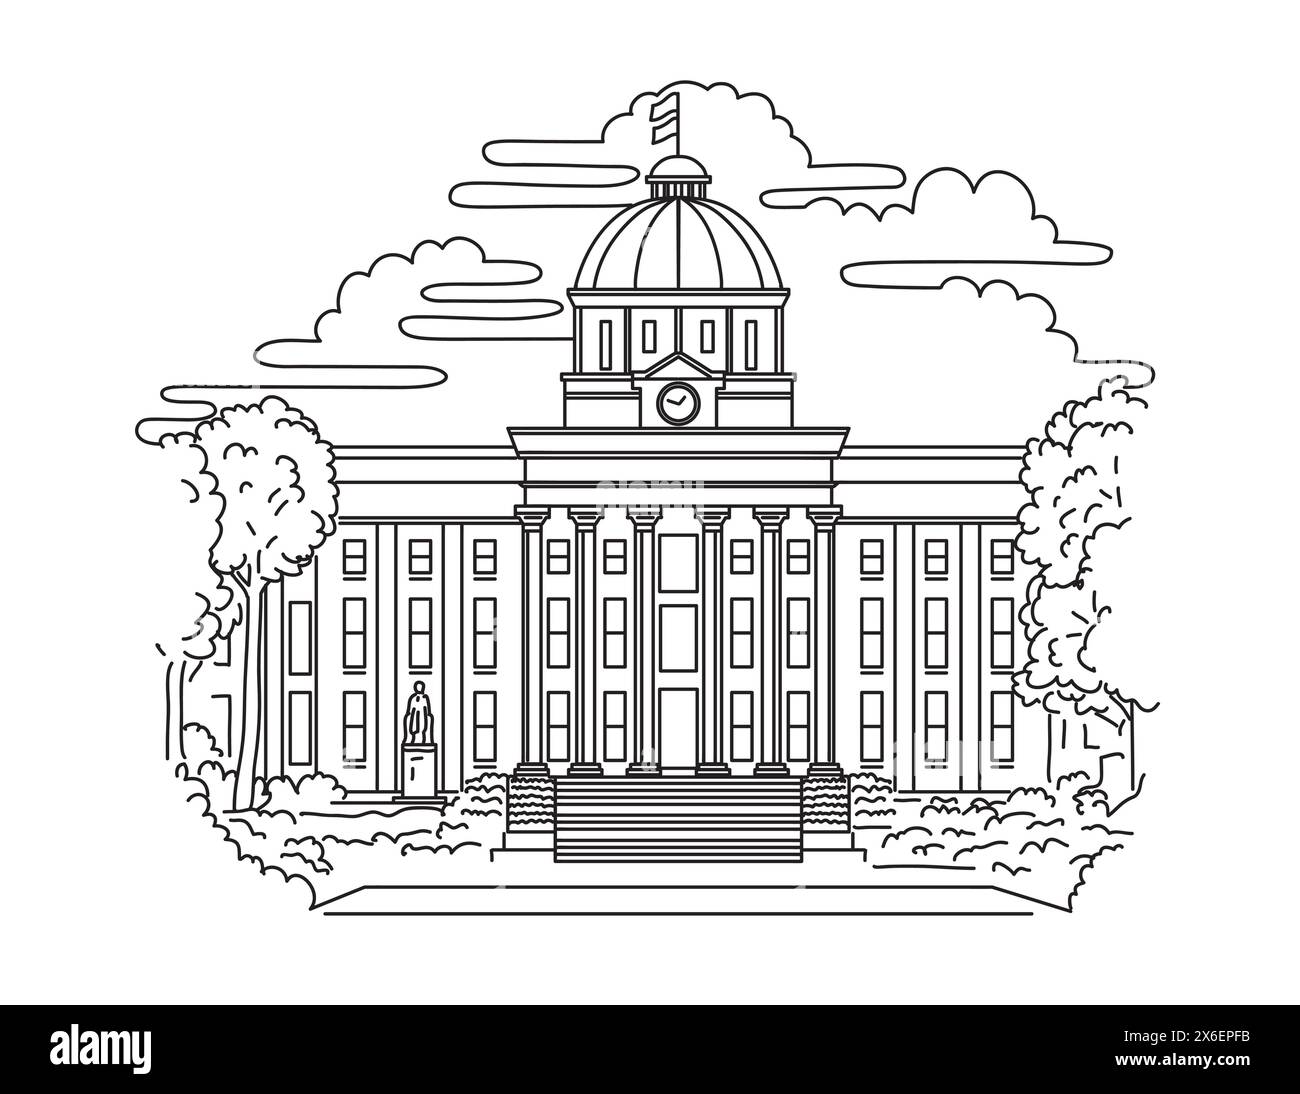 Mono-Line-Illustration des Alabama State Capitol, des Kapitols für Alabama, das sich auf dem Capitol Hill, ursprünglich Goat Hill, in Montgomery, befindet. Stock Vektor